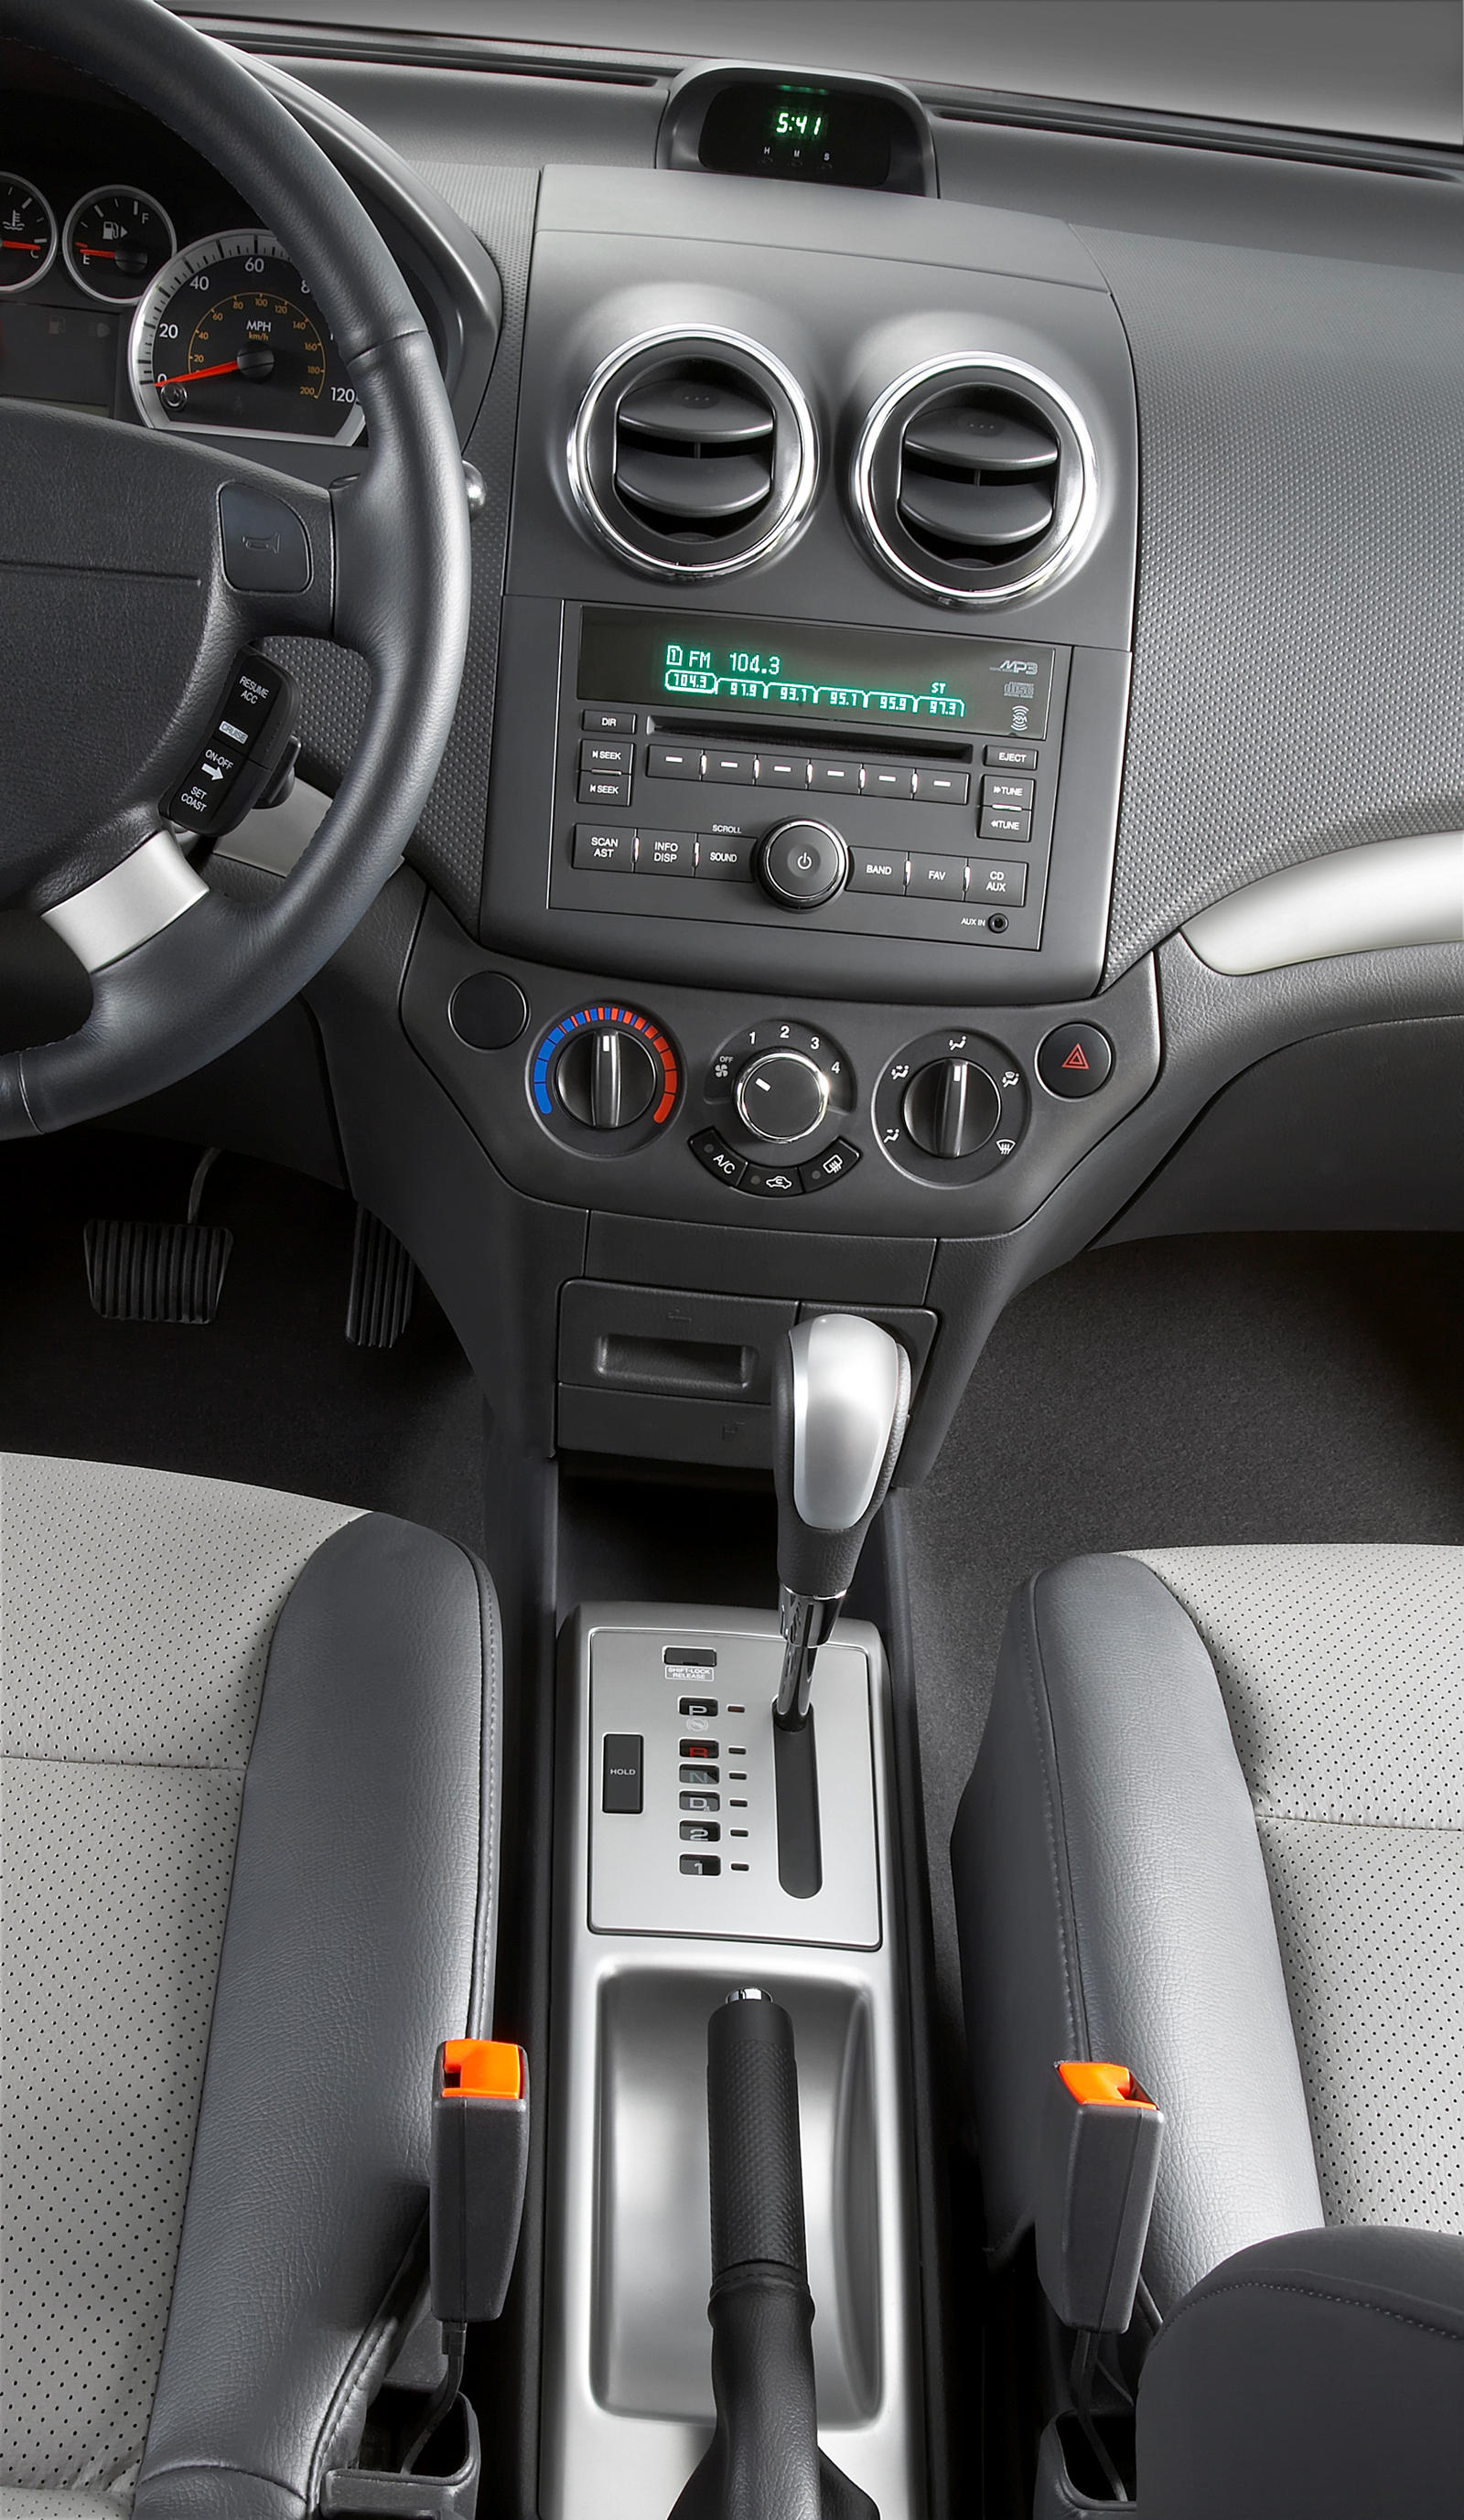 2011 Chevrolet Aveo Sedan Interior Photos | CarBuzz